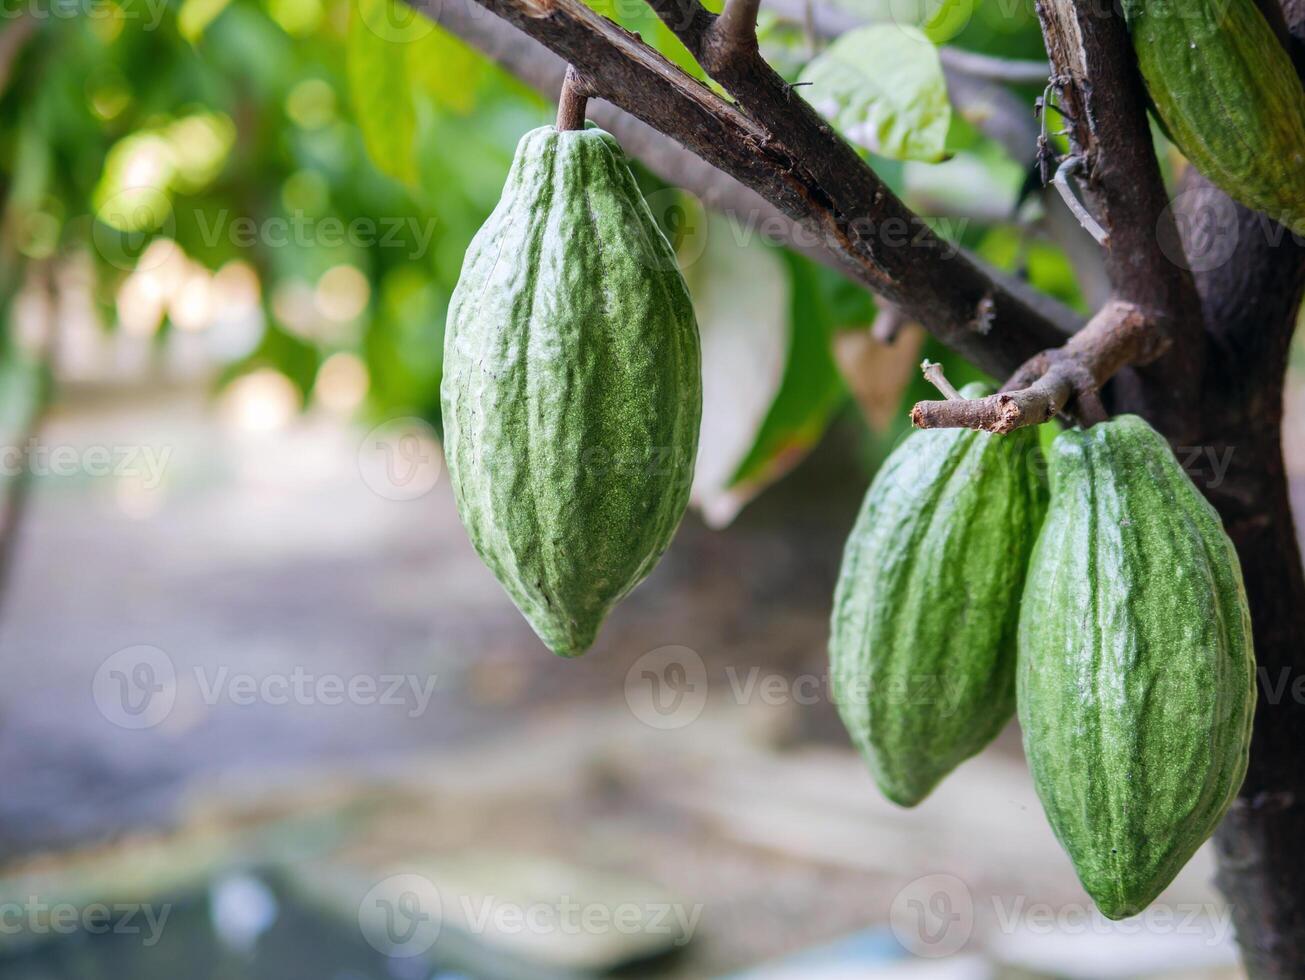 vert cacao dosettes grandir sur des arbres. le cacao arbre théobrome cacao avec des fruits, vert cacao brut cacao arbre plante fruit plantation photo